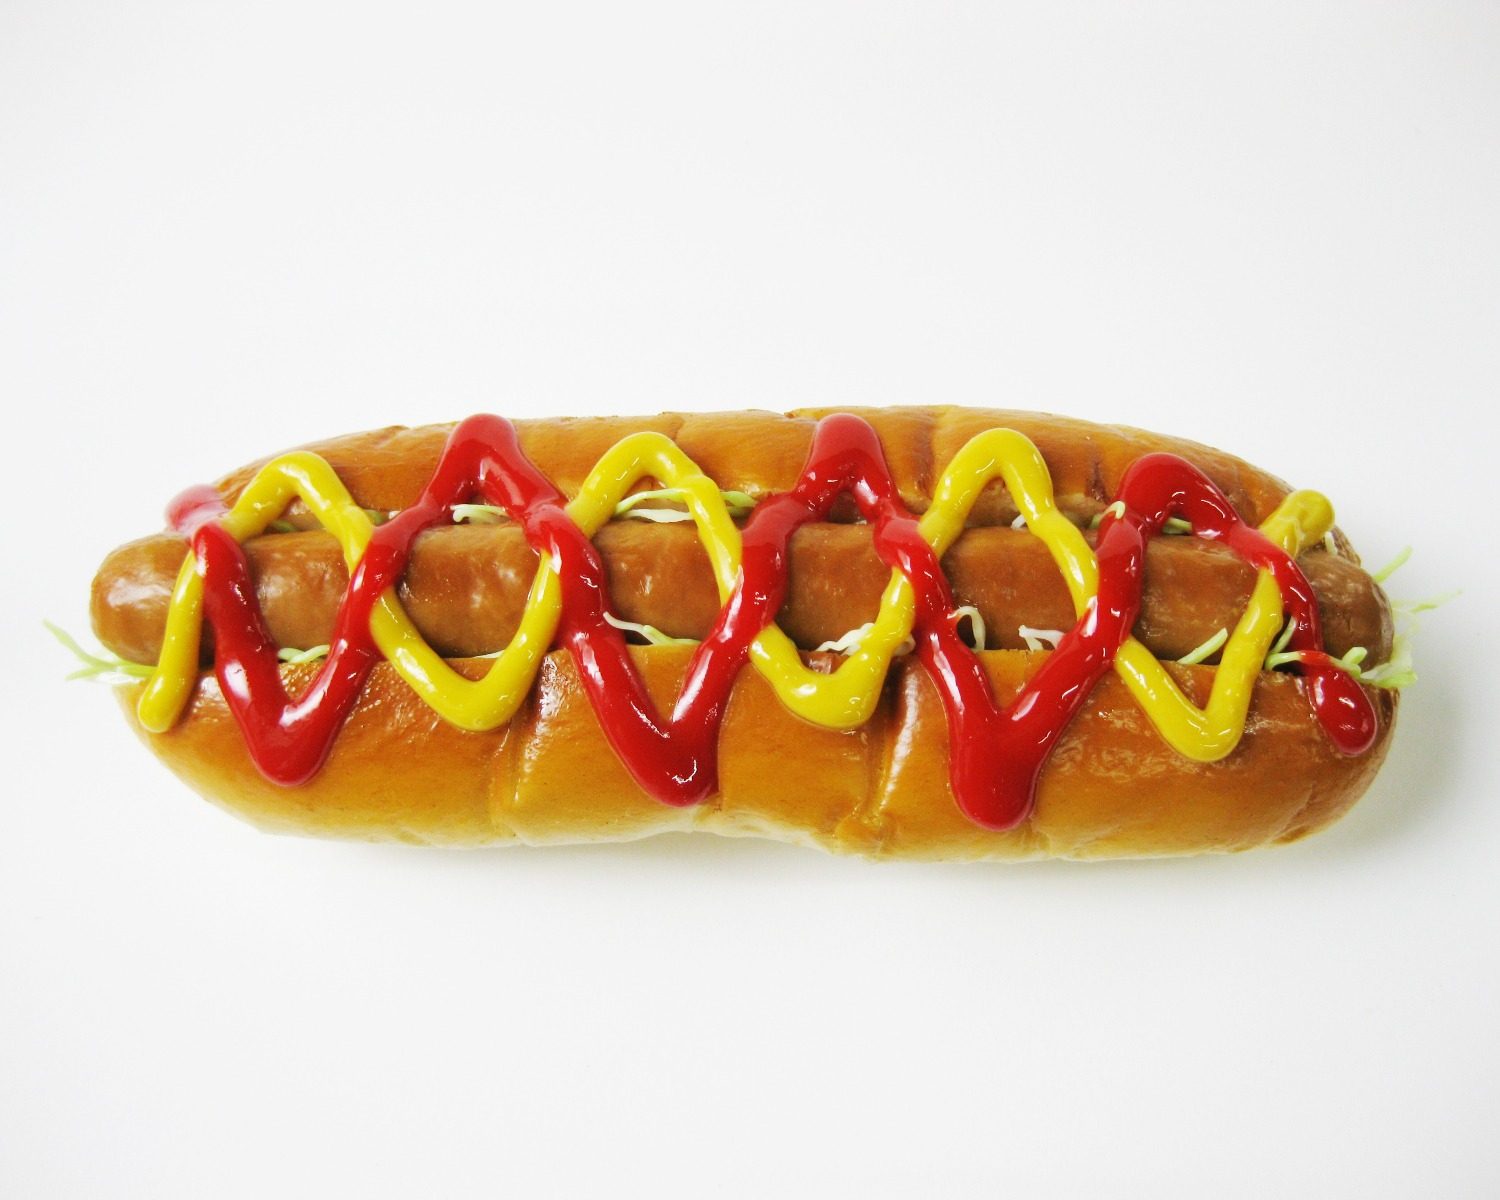 Der-Hotdog-Verkäufer-in-der-Krise